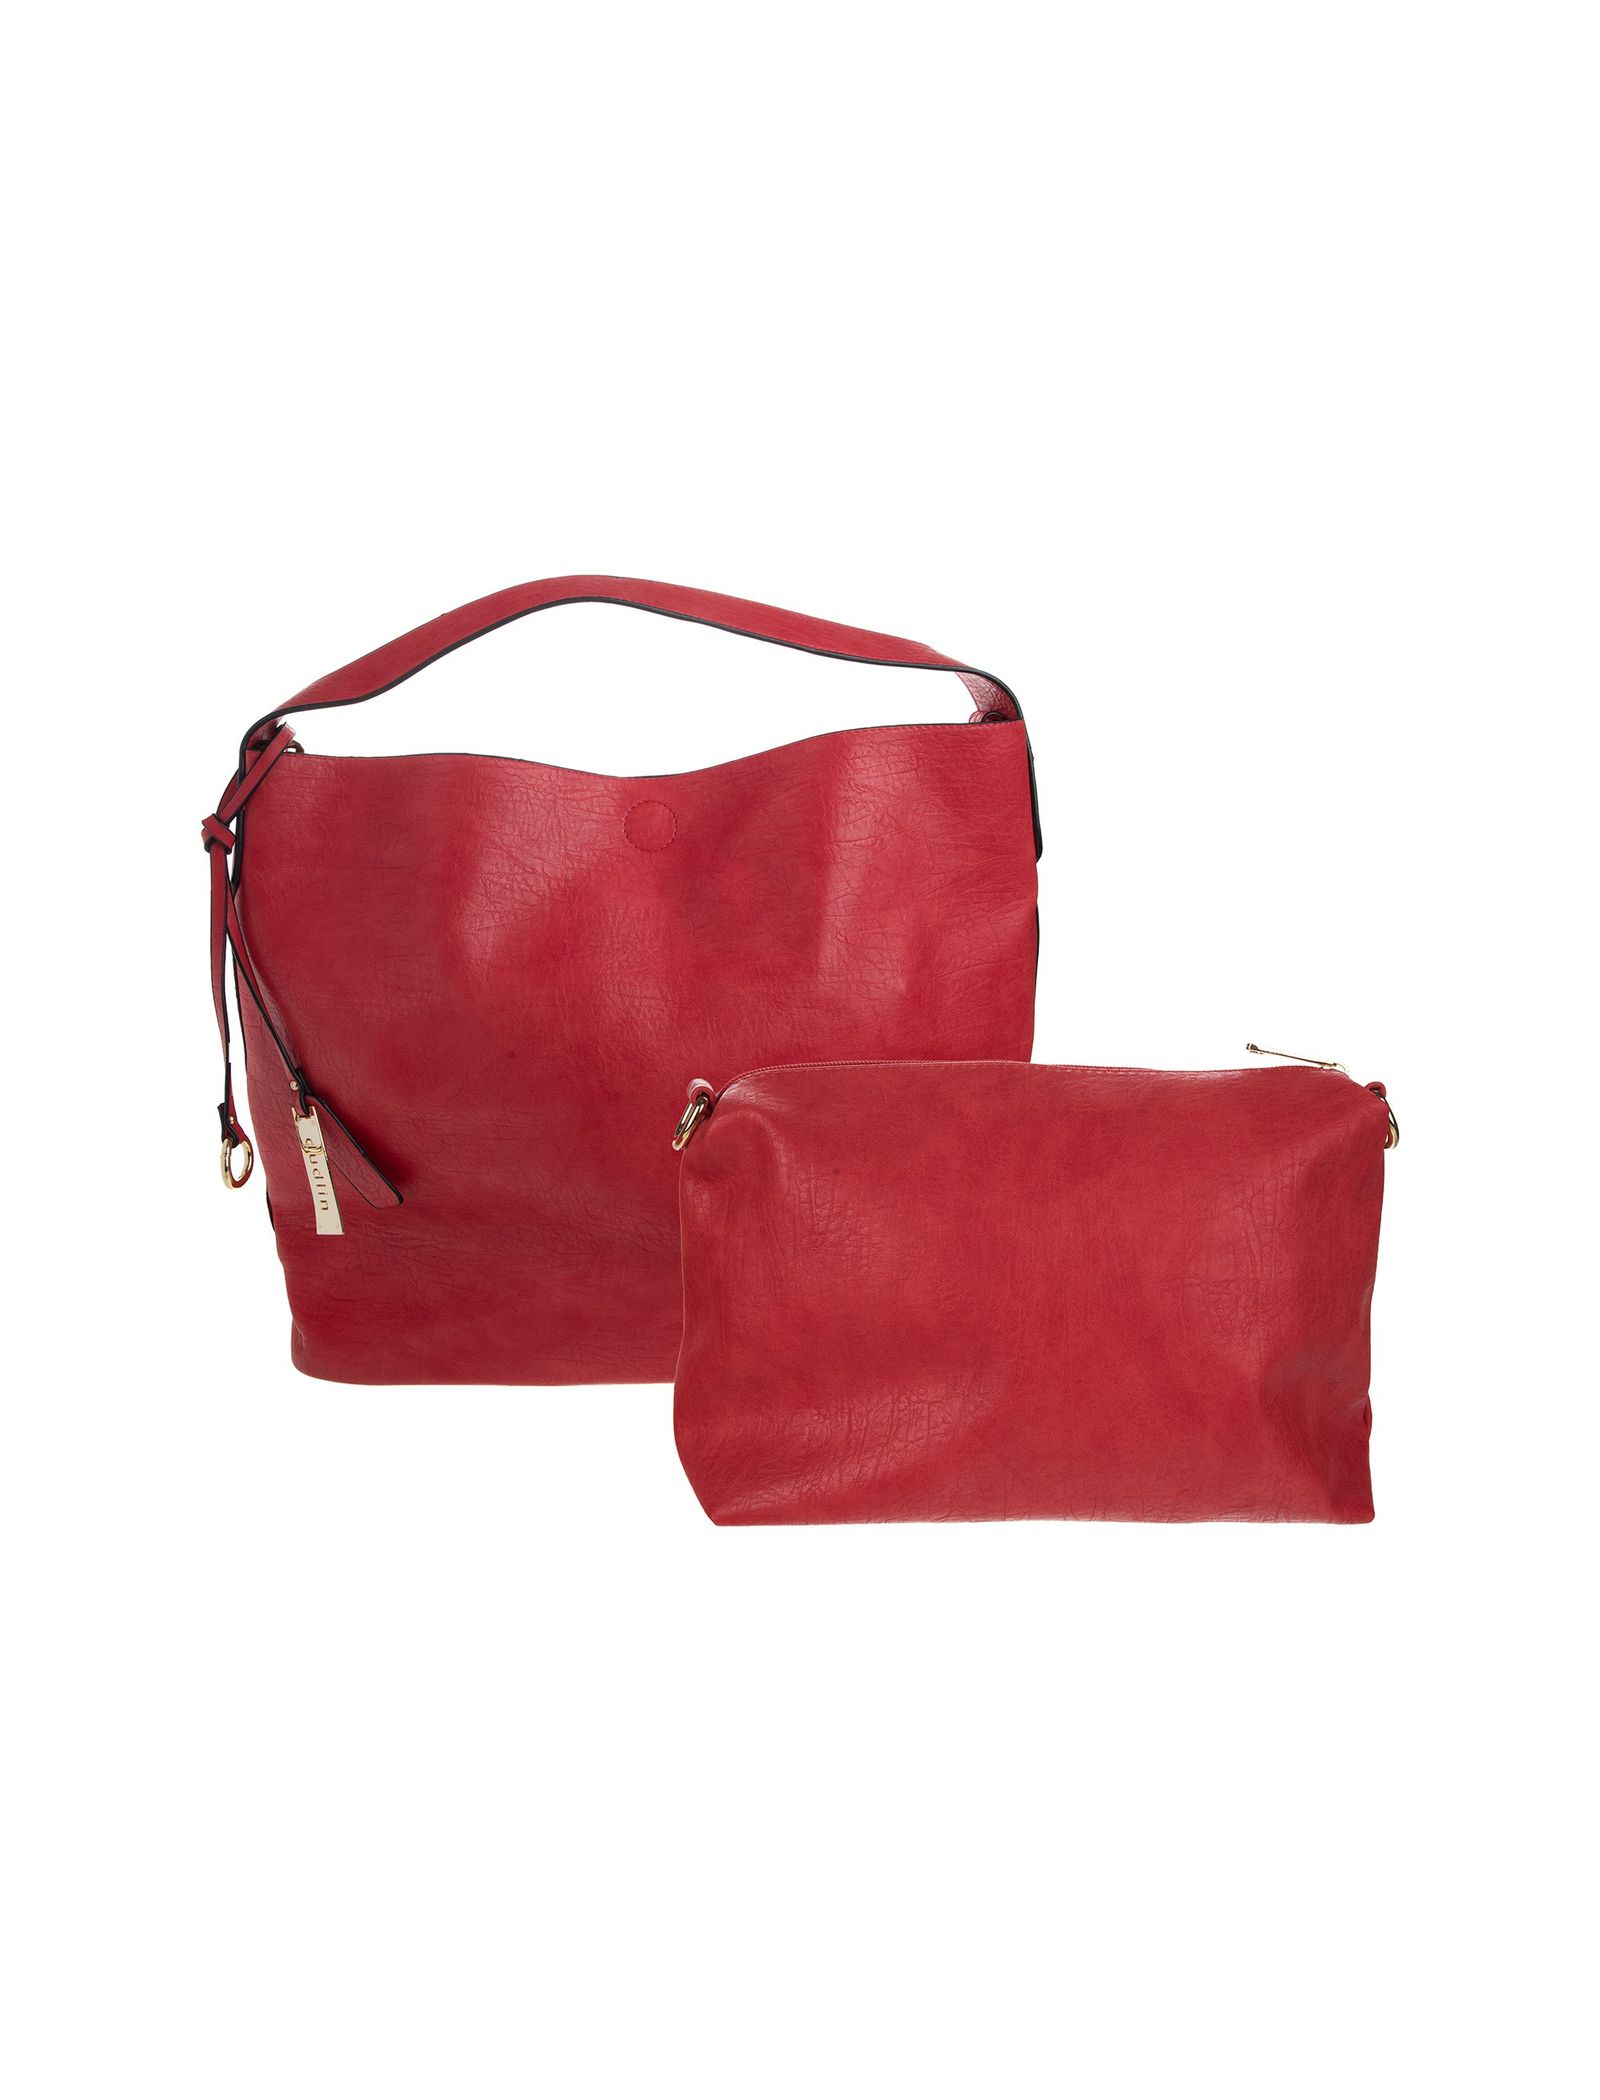 کیف دستی روزمره زنانه - دادلین تک سایز - قرمز - 5